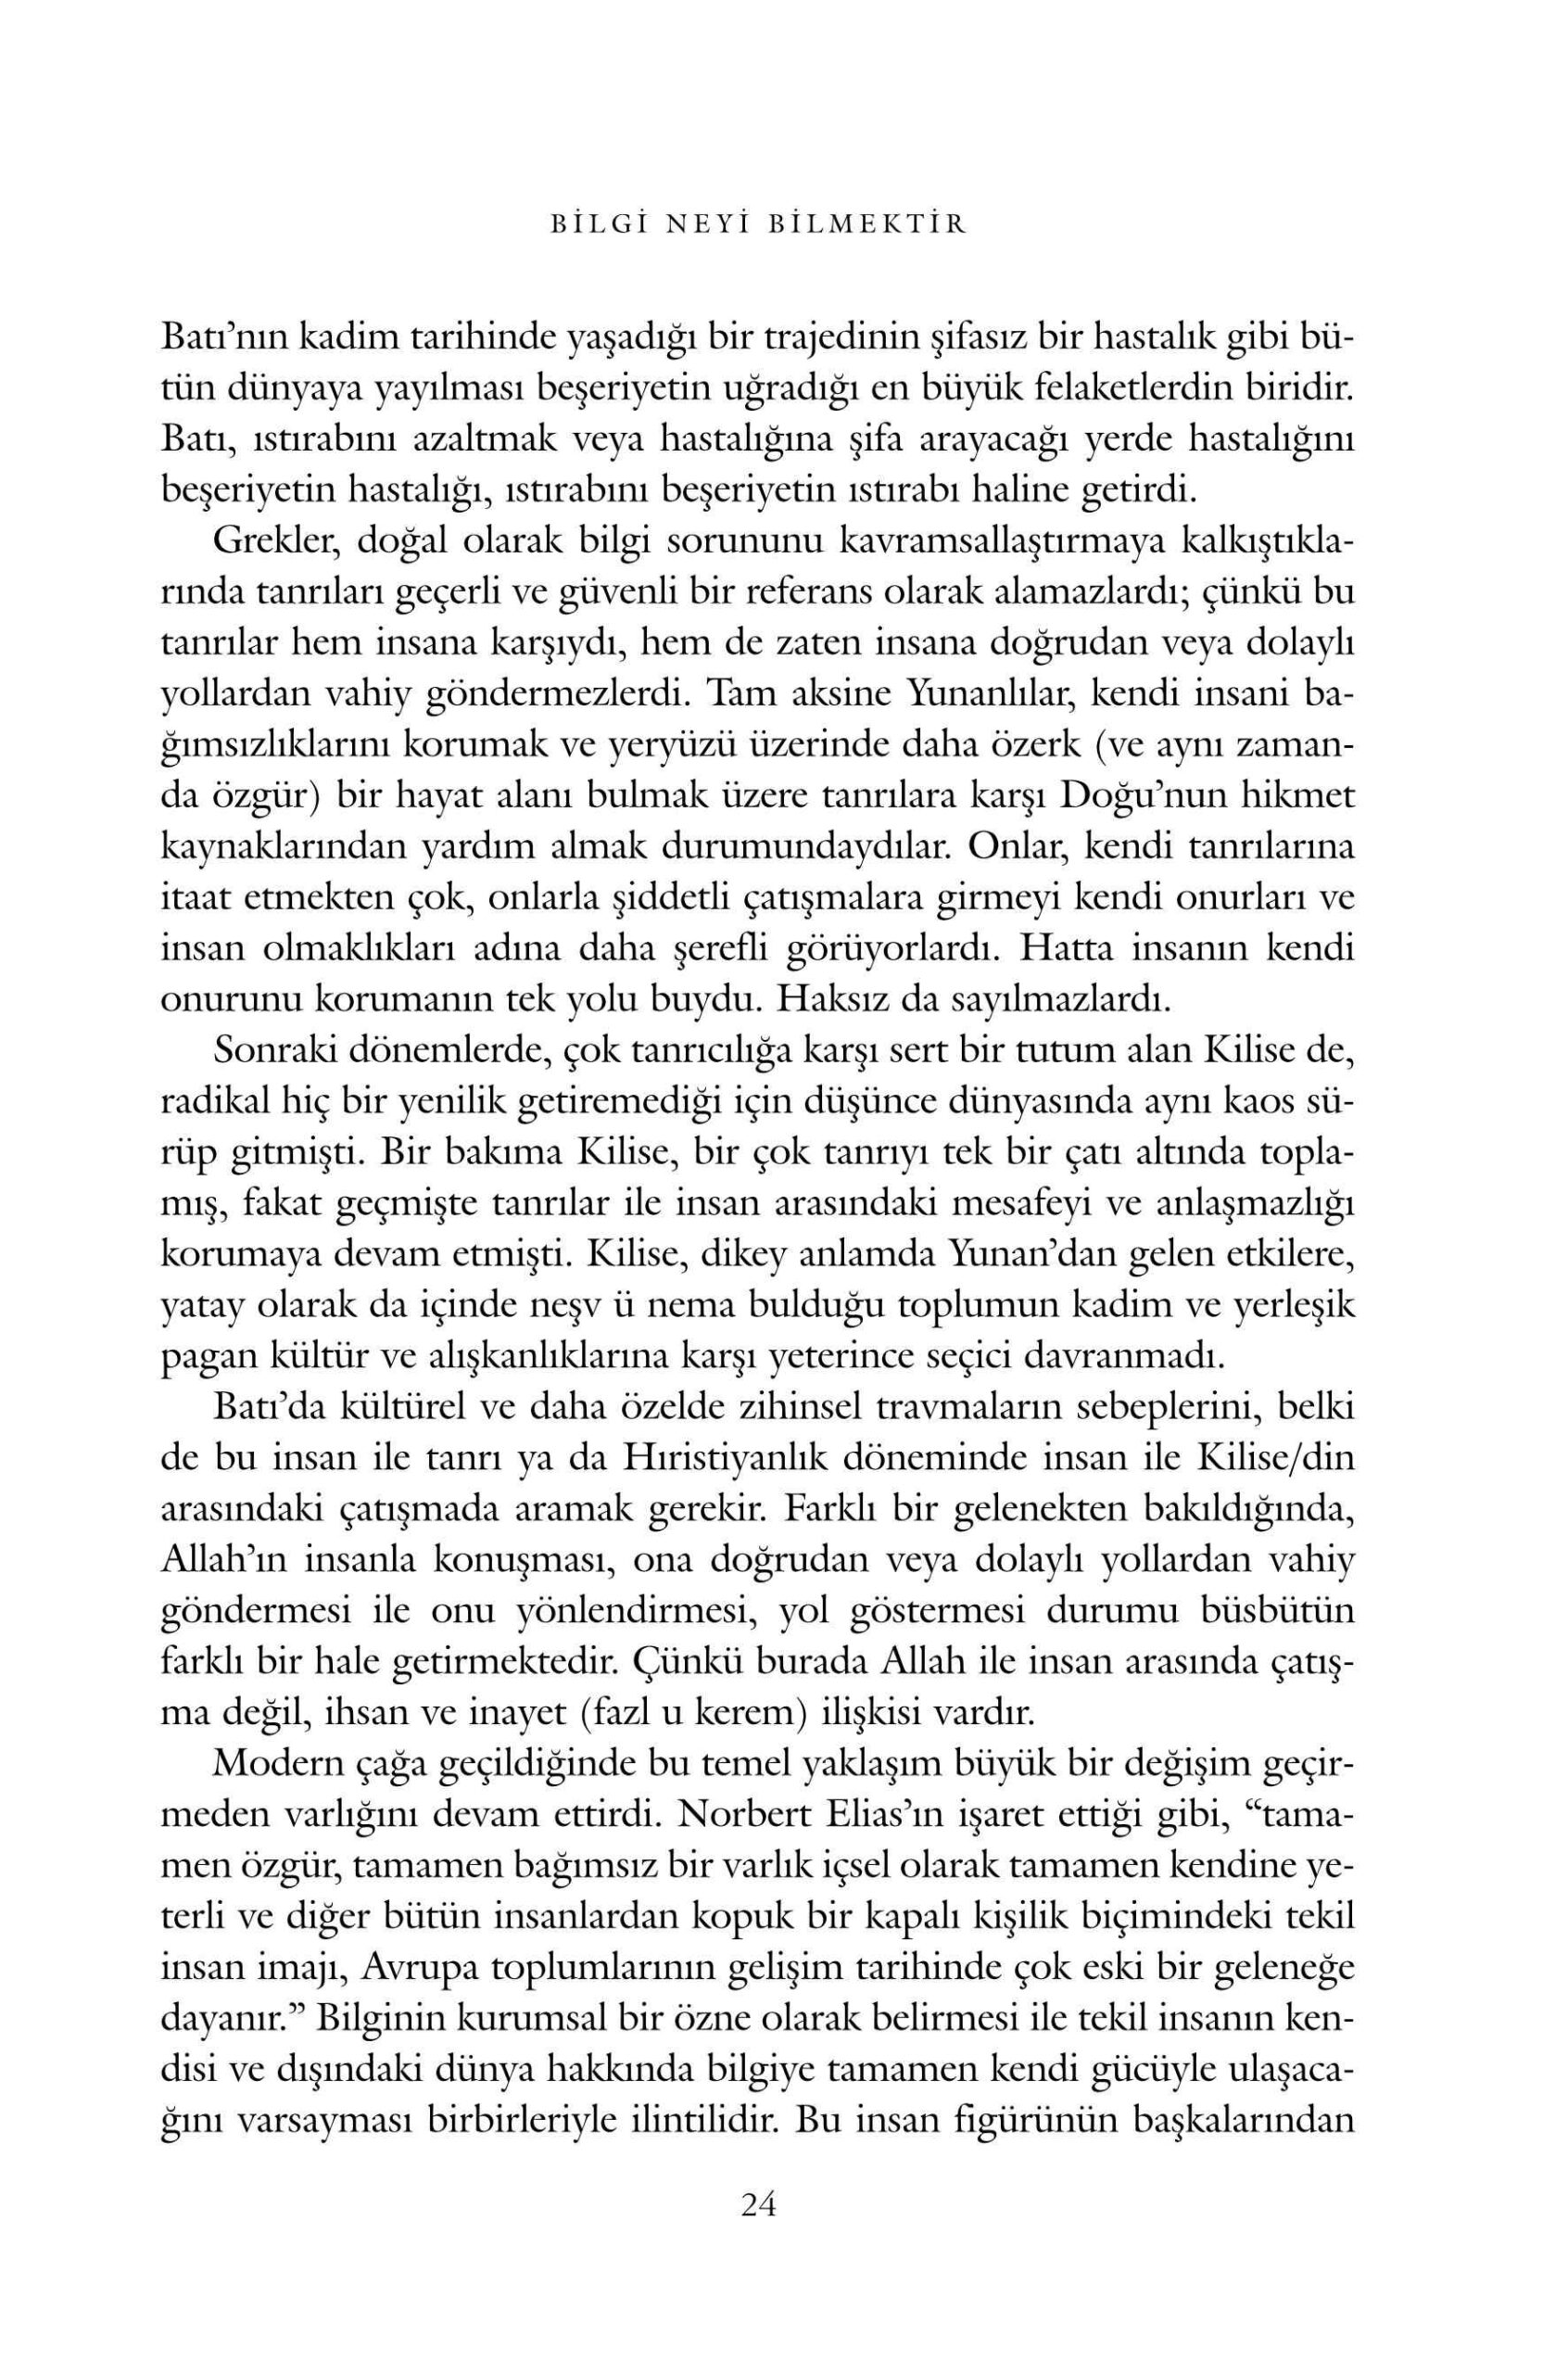 Ali Bulac - Bilgi Neyi Bilmektir - IsikAkademiY.pdf, 211-Sayfa 